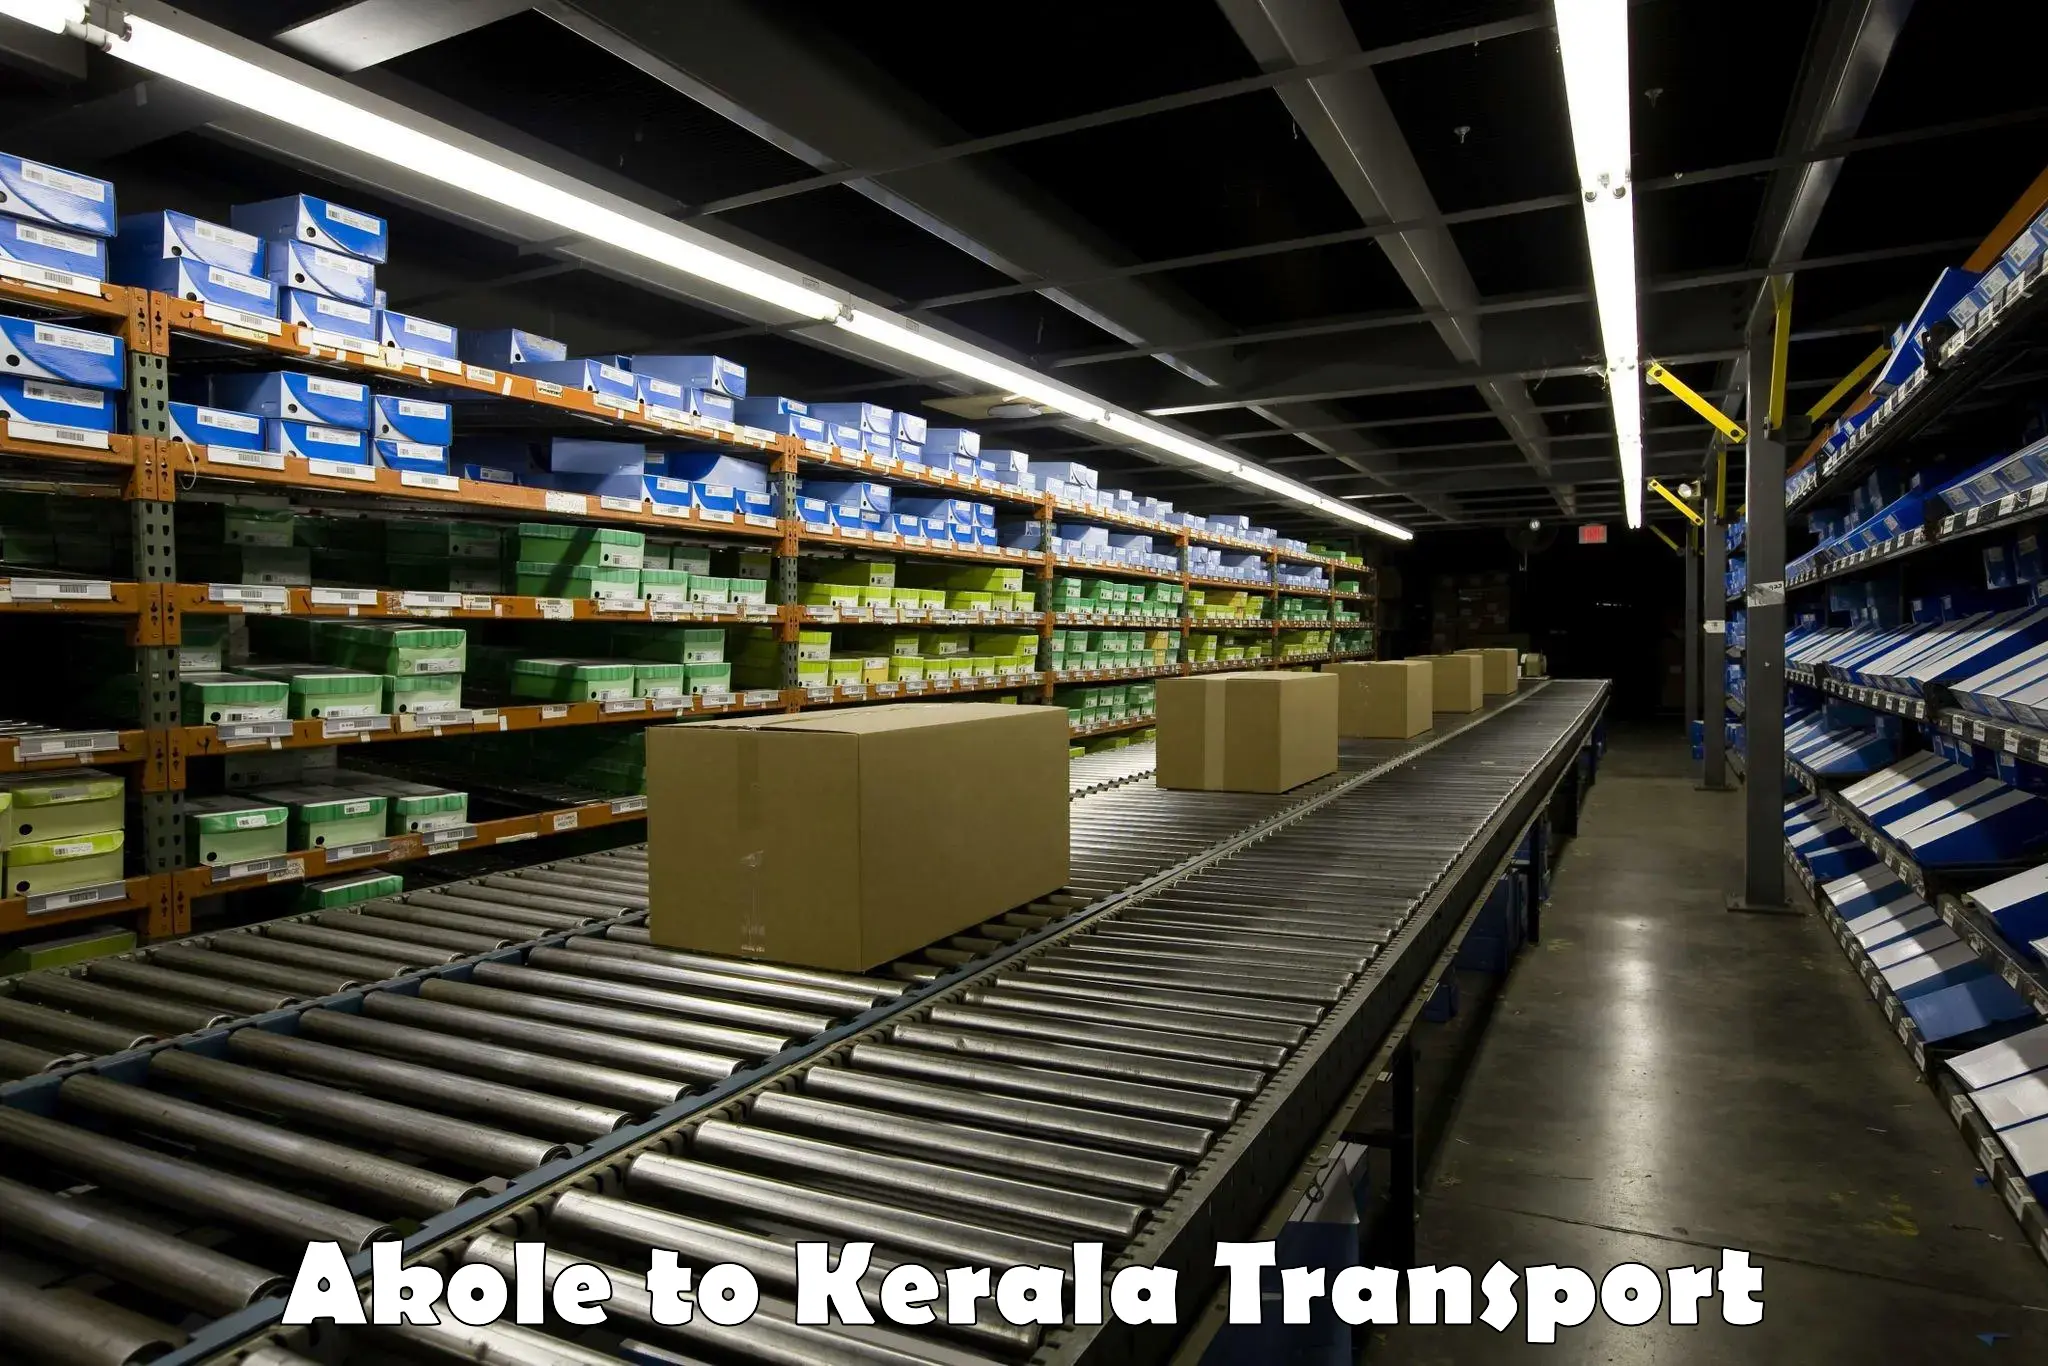 Online transport service Akole to Kanjirapally